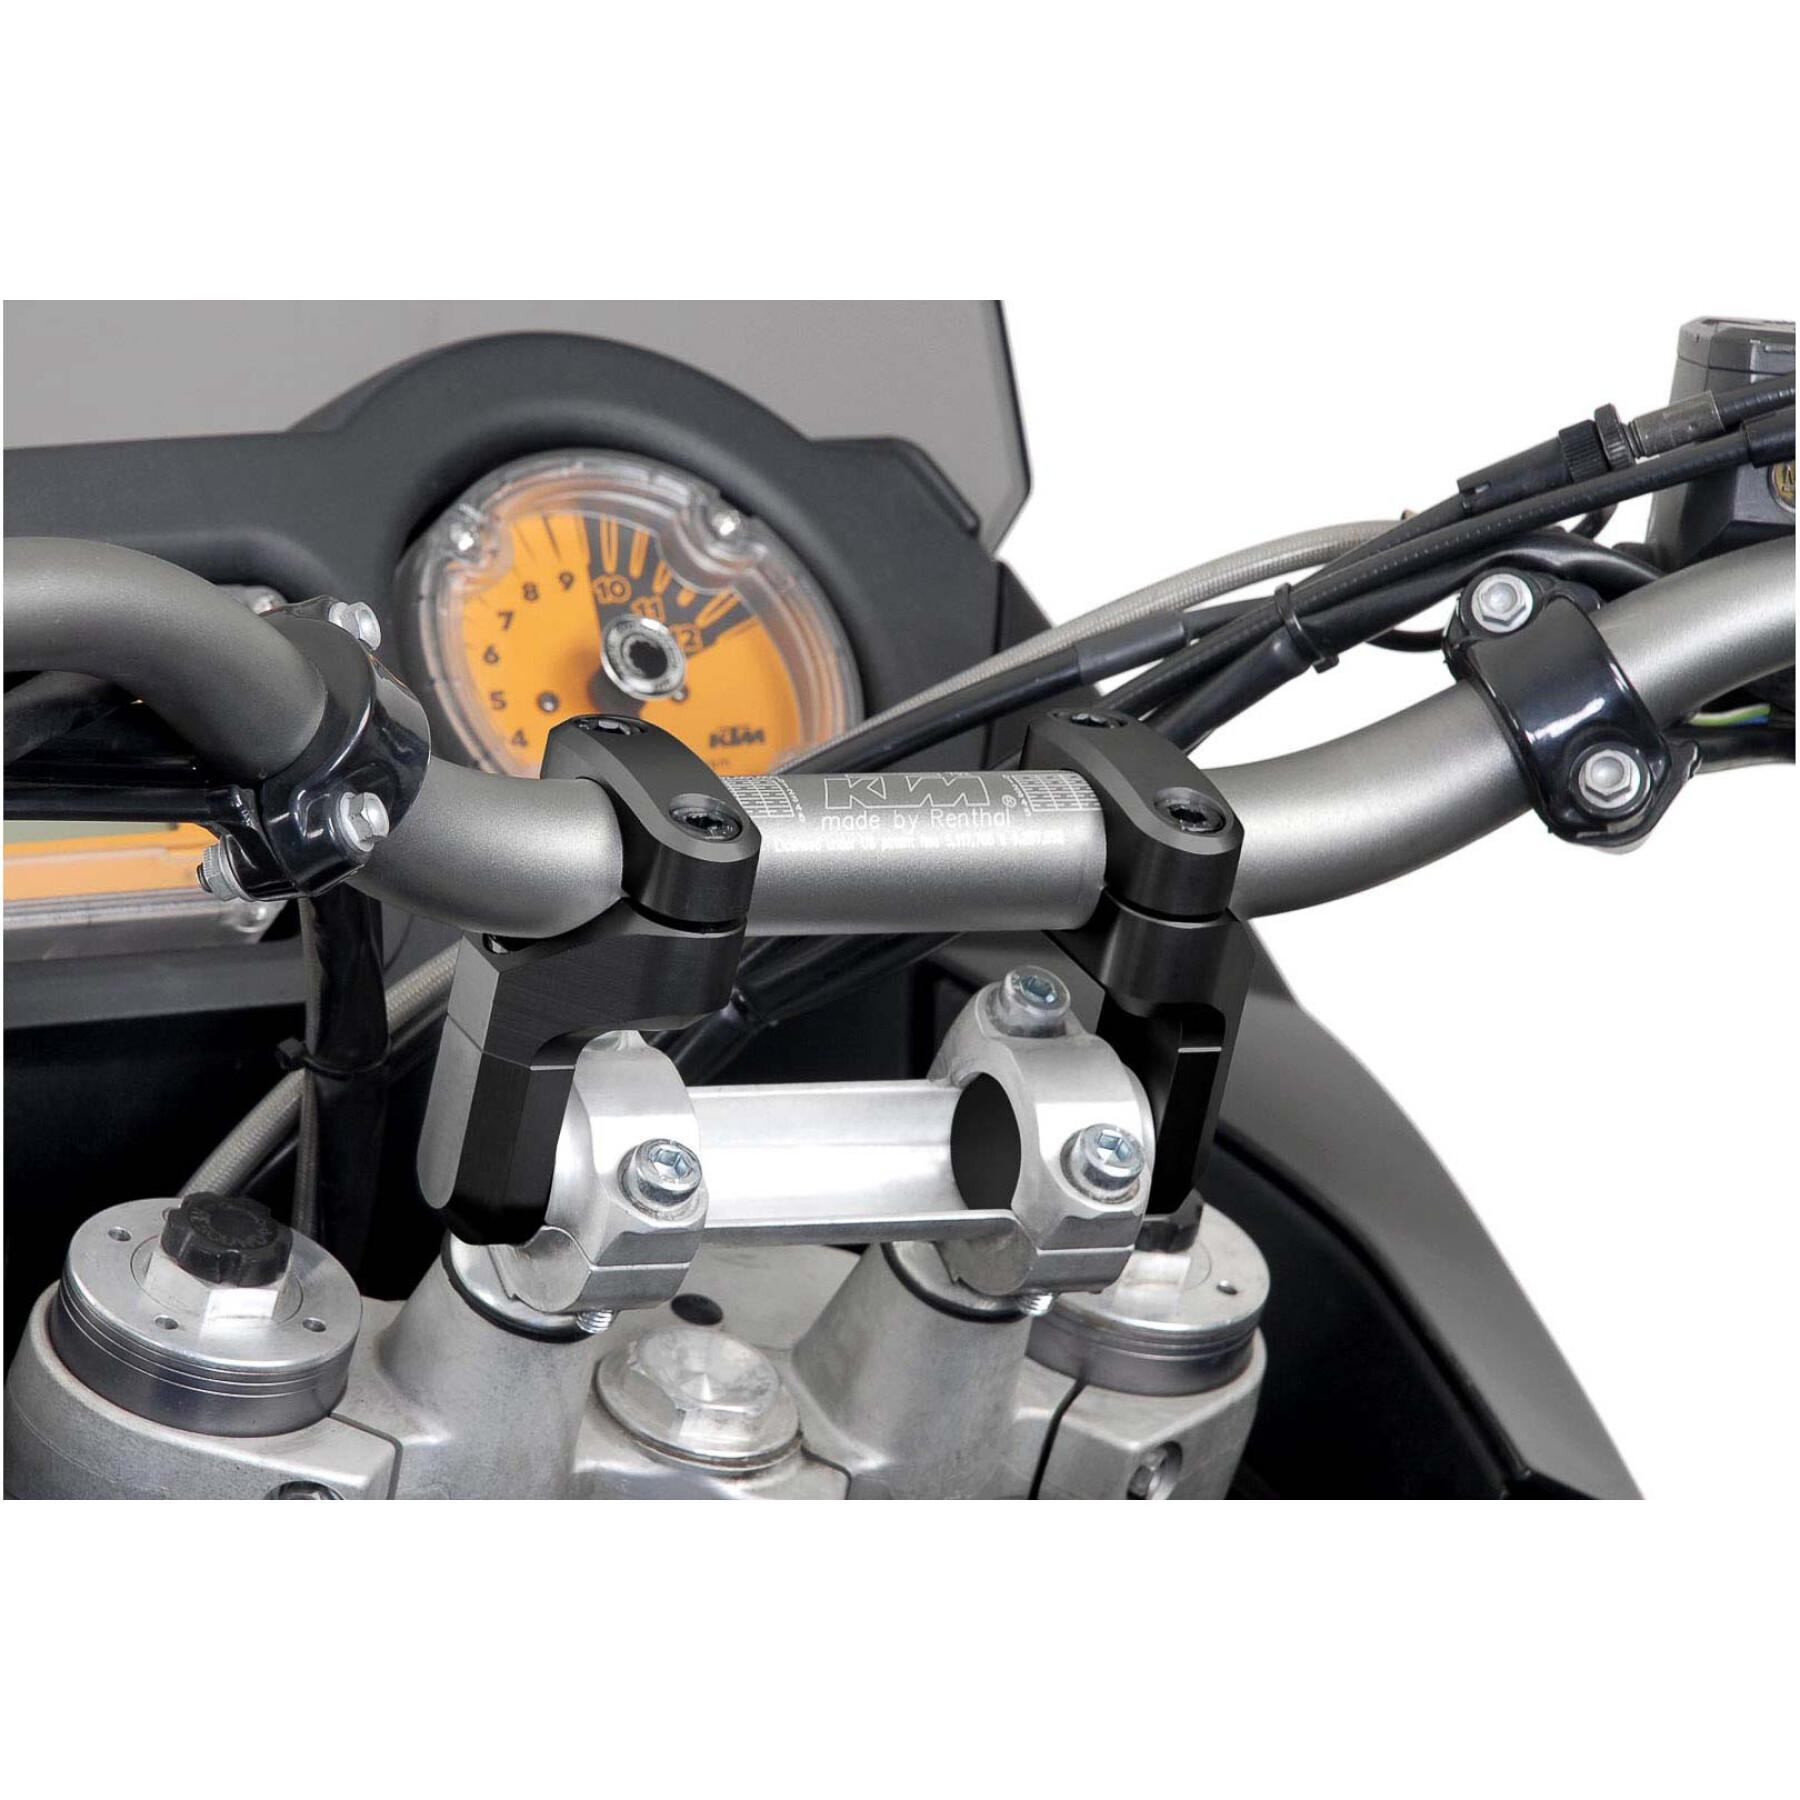 Extensões ajustáveis do guiador de motocicleta diam.28 mm SW-Motech